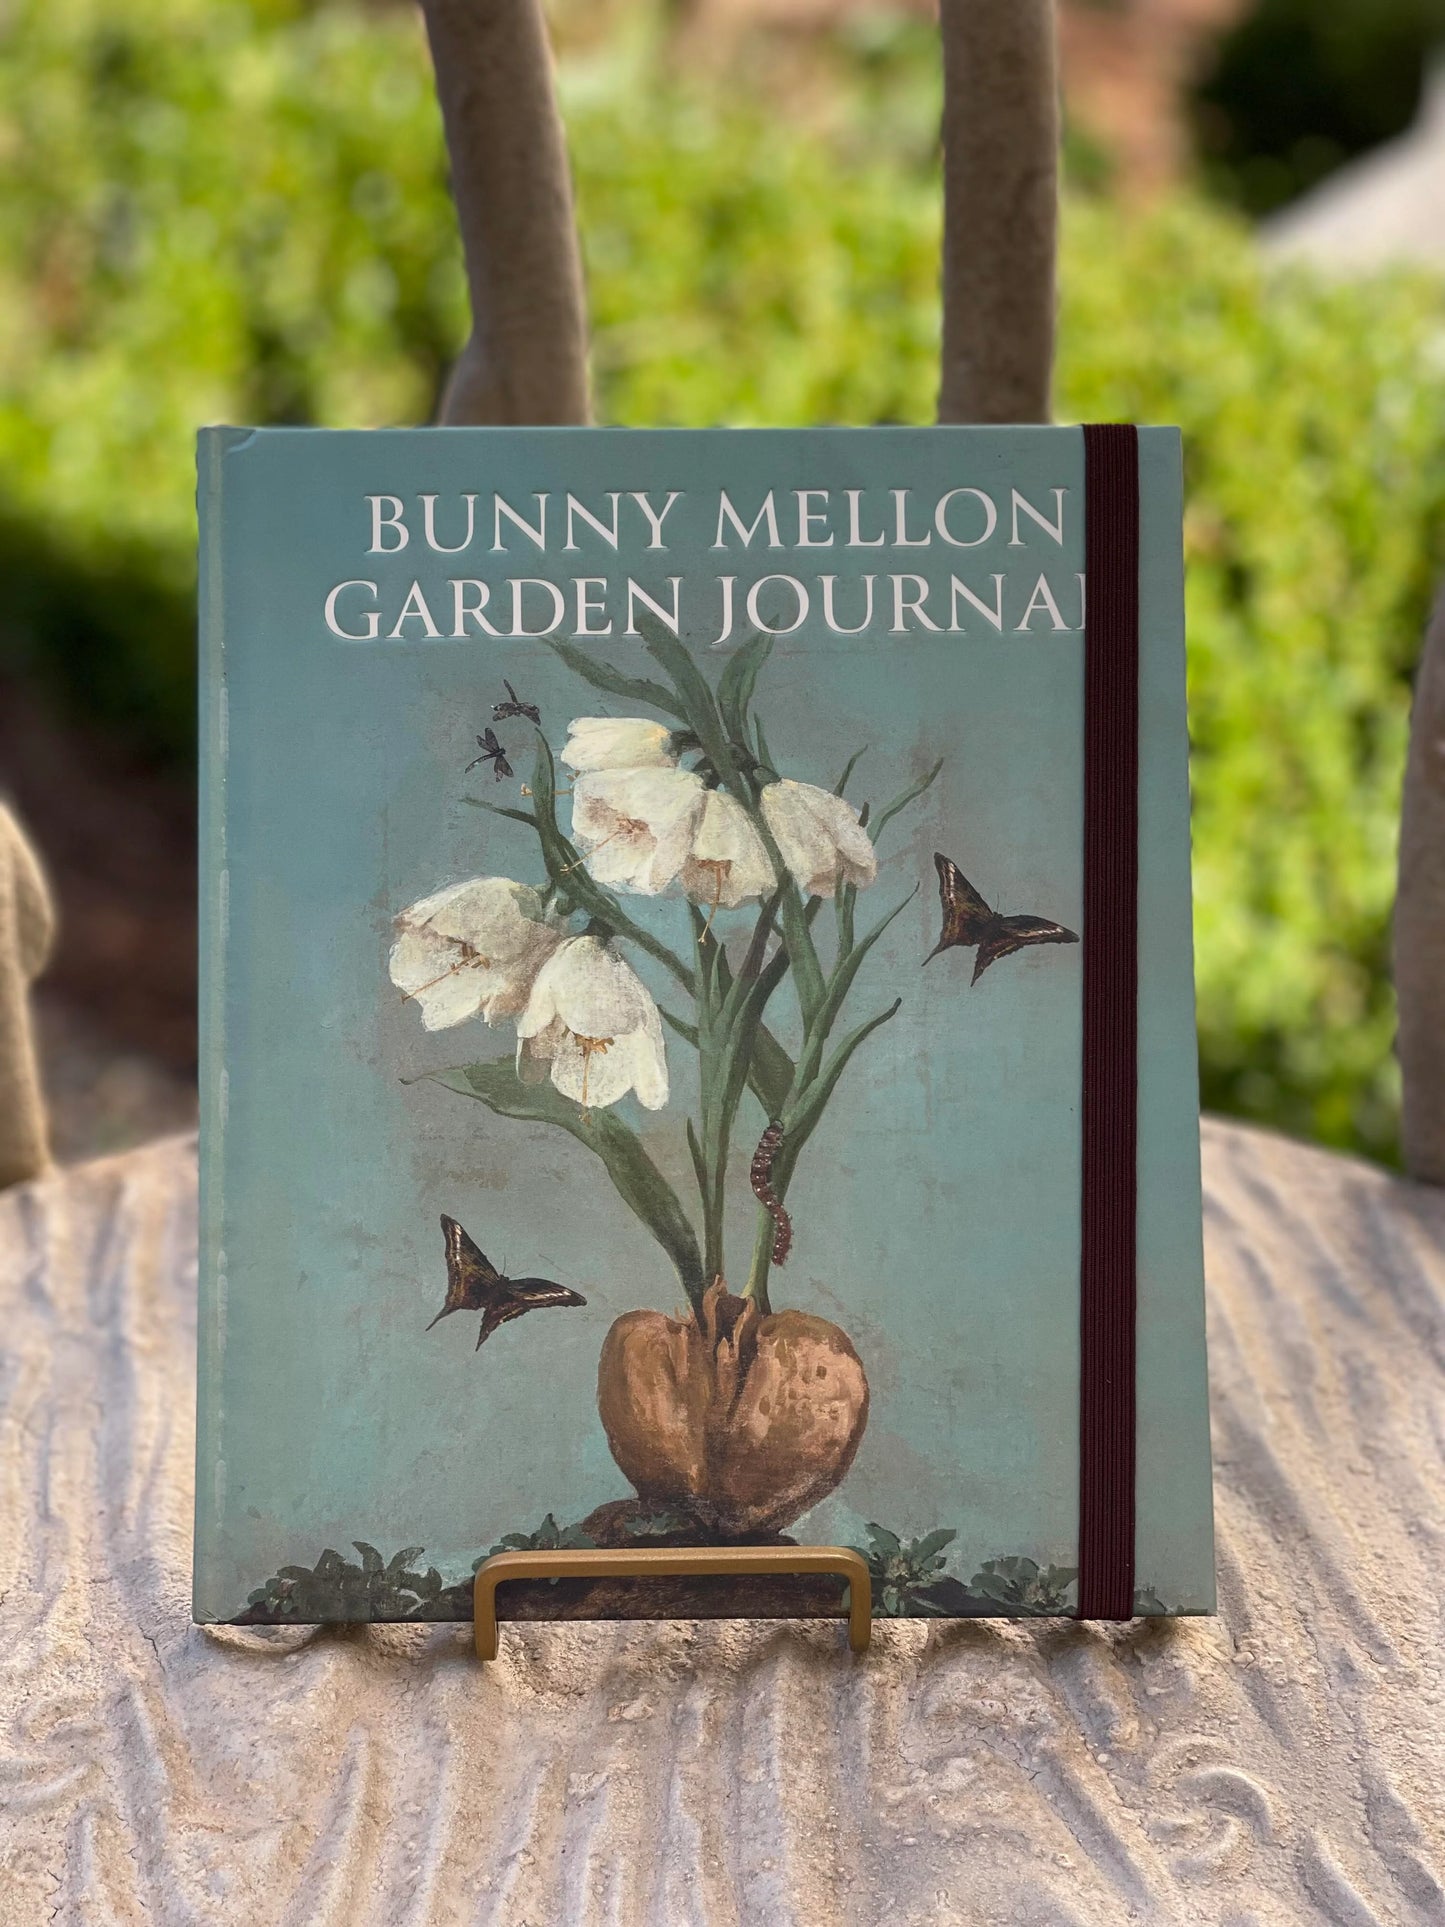 Bunny Mellon “Garden Journal”